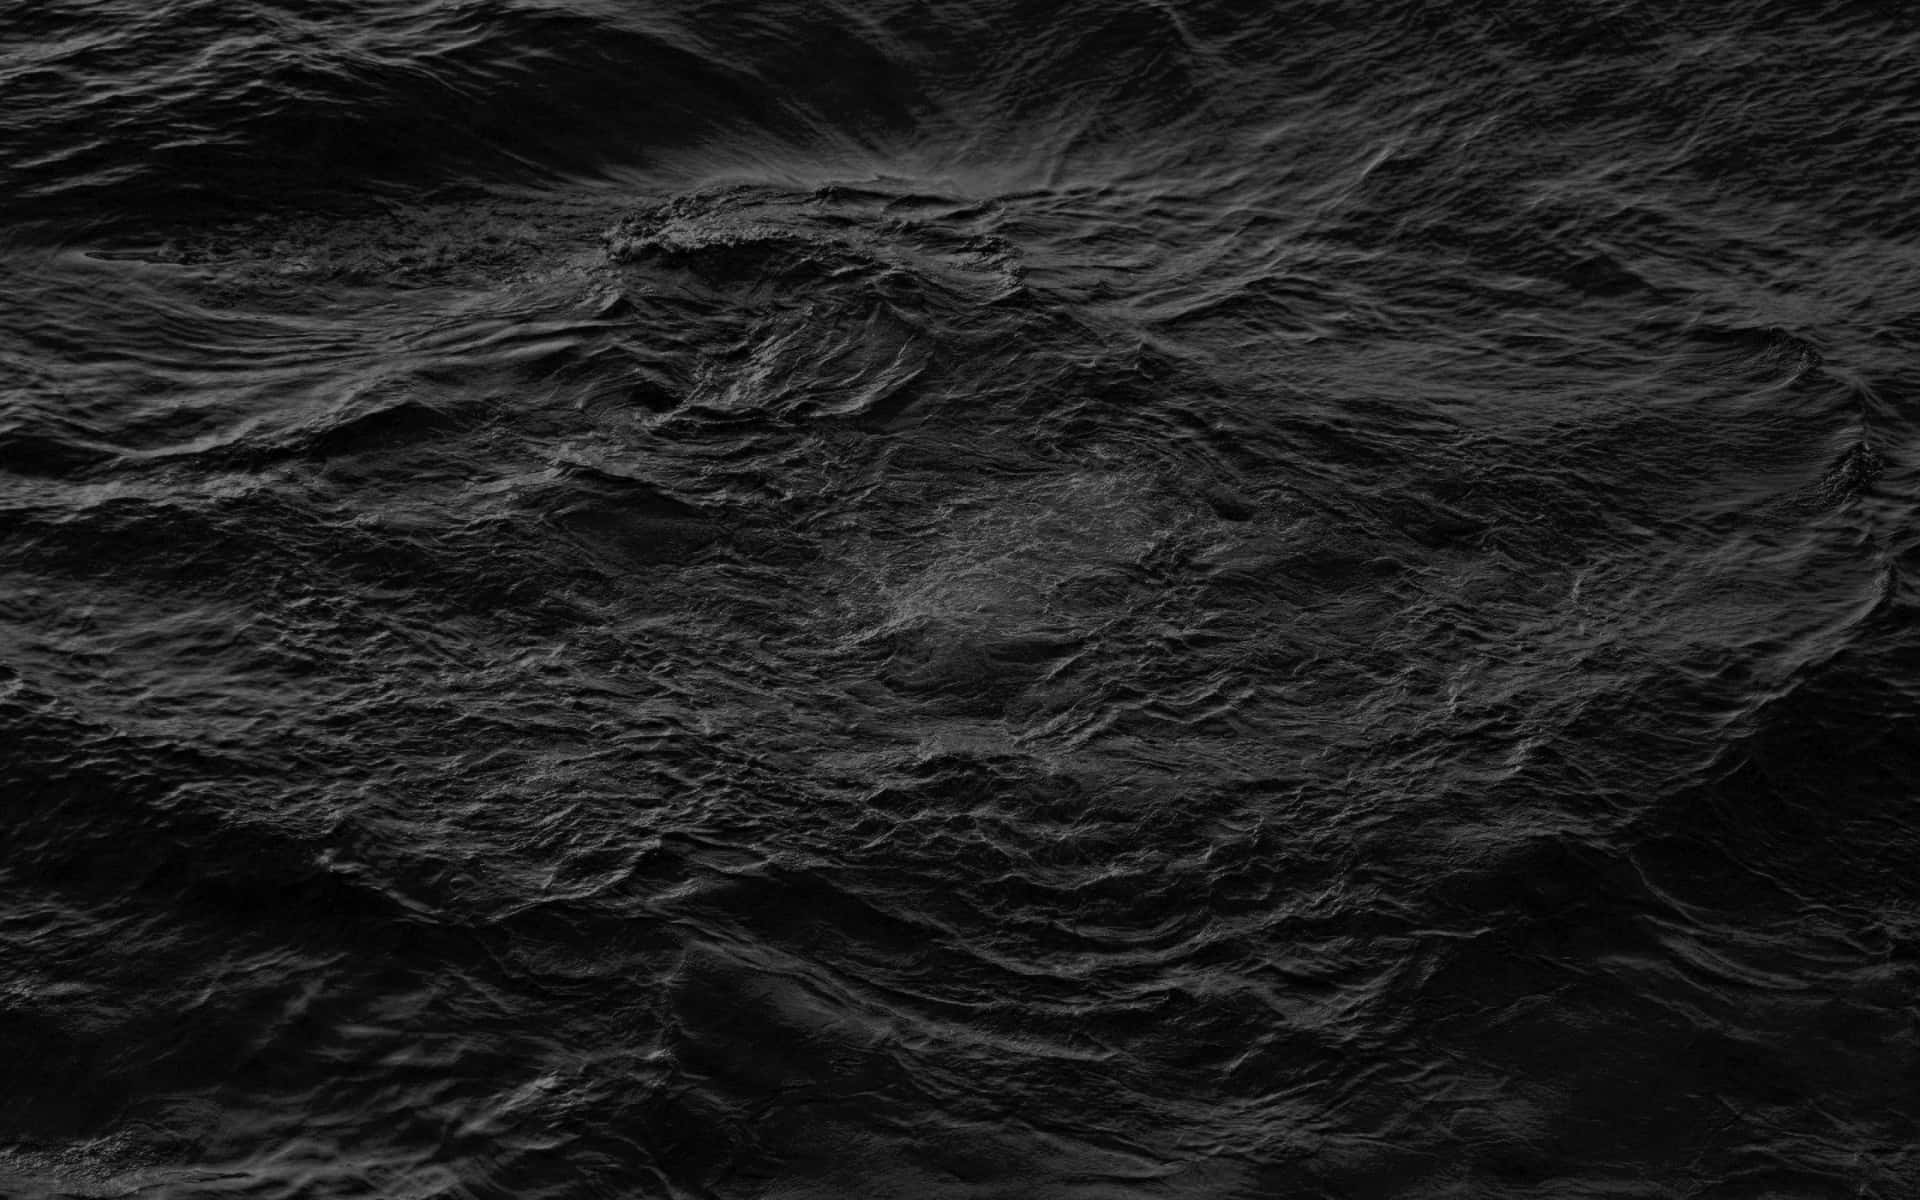 Olasdel Mar En Blanco Y Negro. Fondo de pantalla